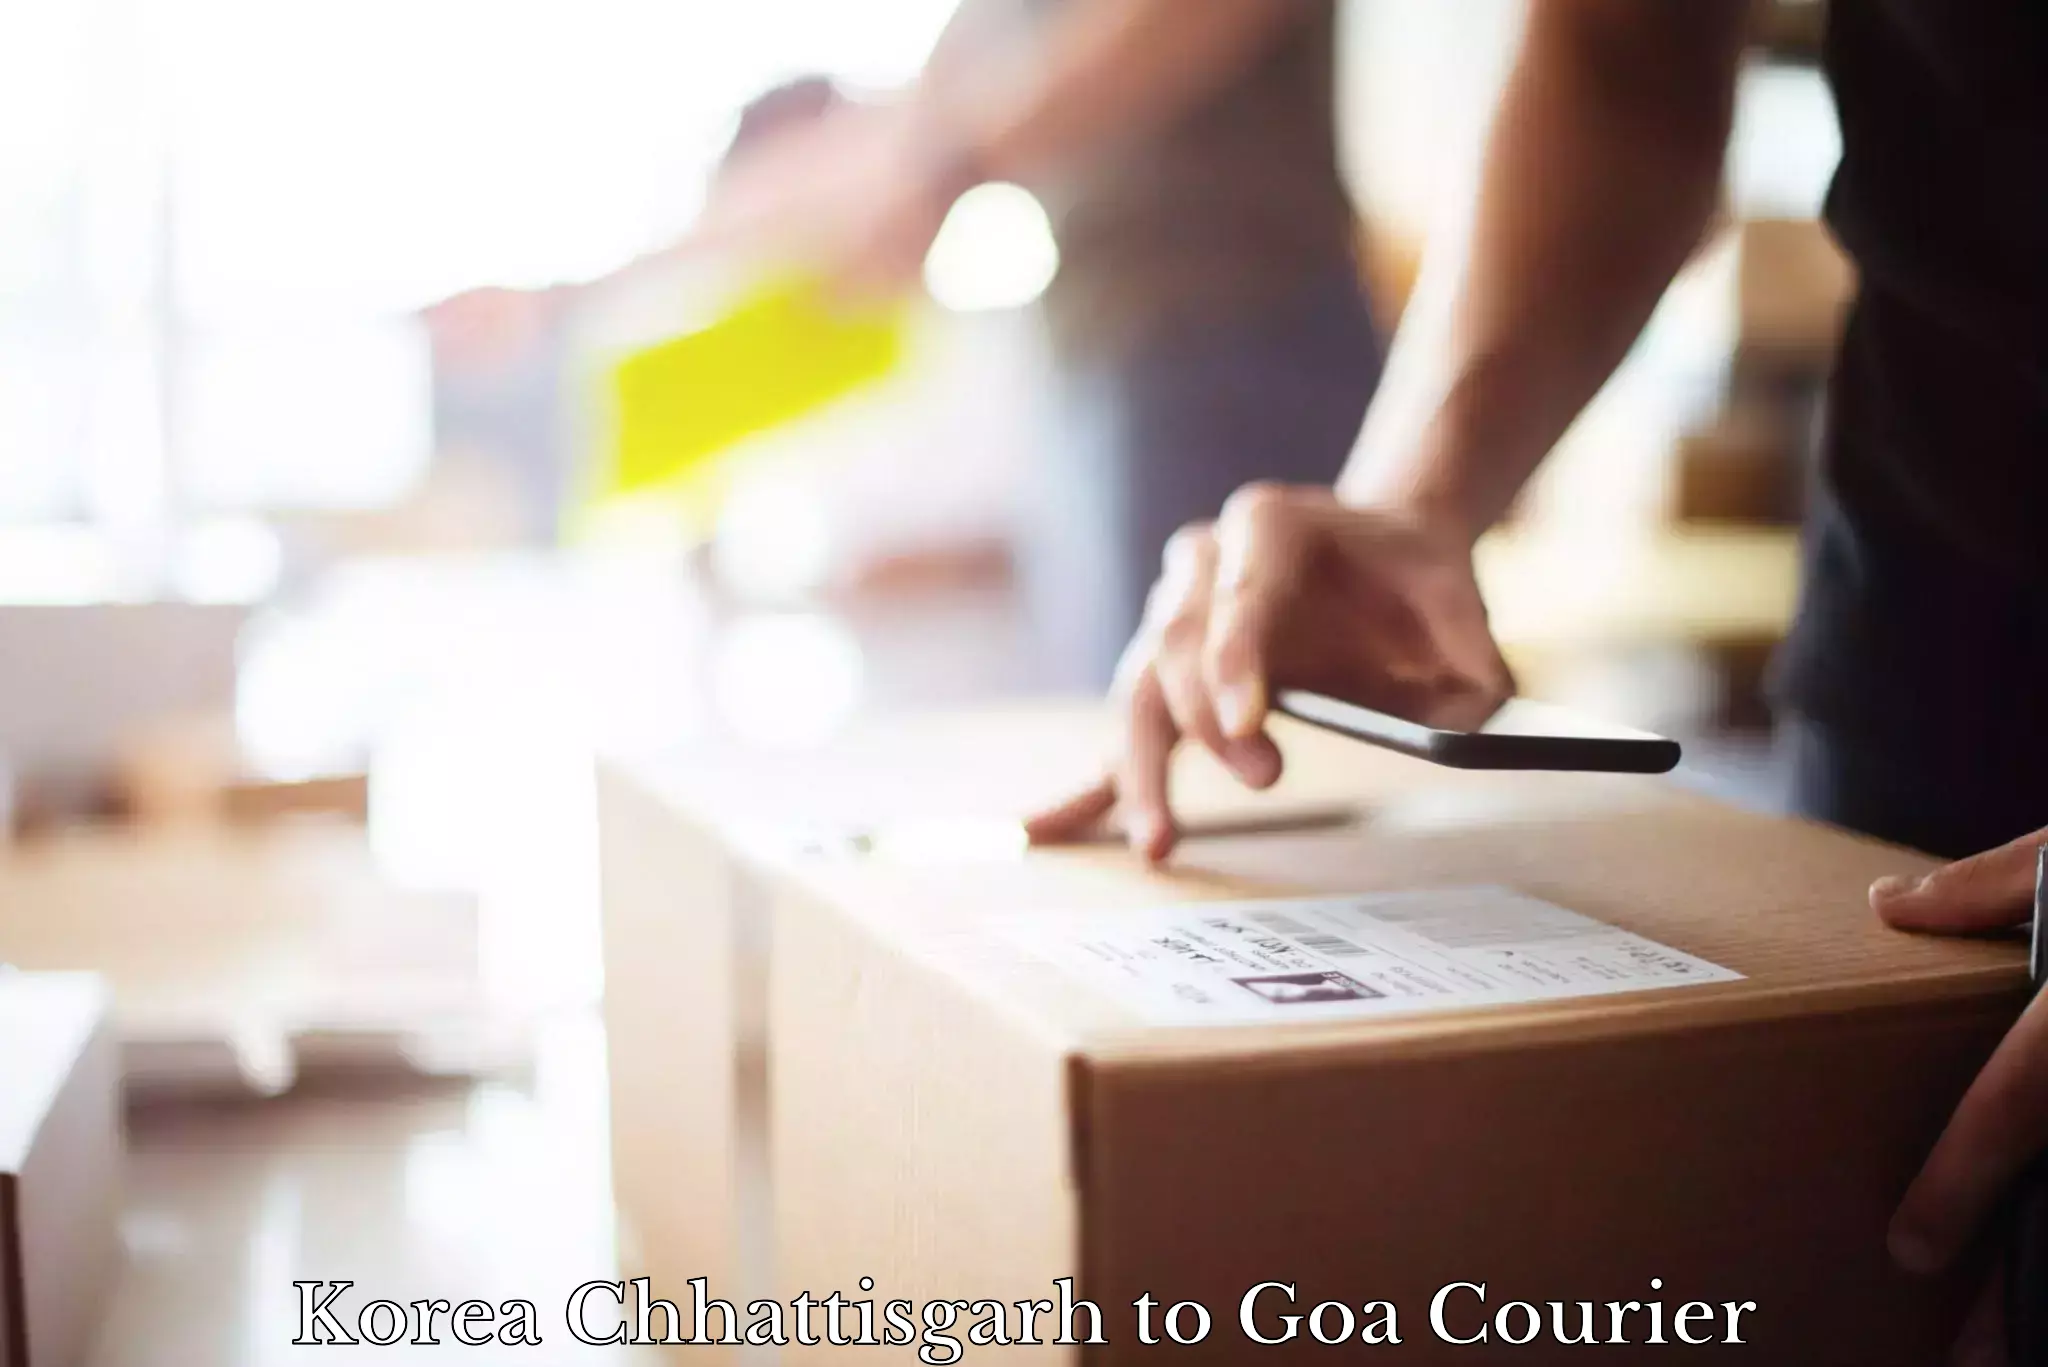 Premium courier services Korea Chhattisgarh to NIT Goa